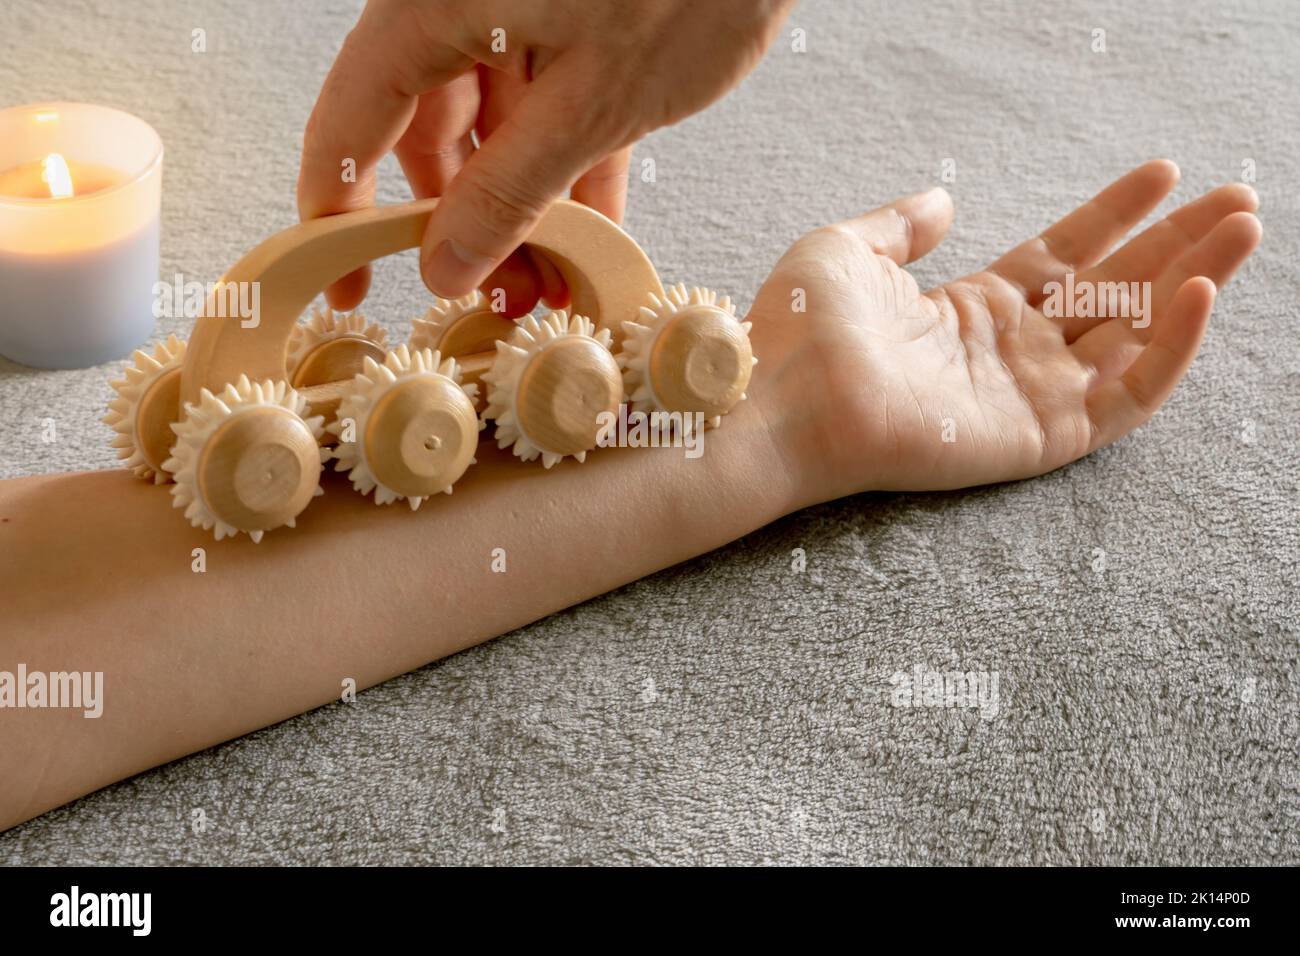 Femme recevant un massage relaxant pour stimuler le drainage lymphatique et le flux sanguin dans un environnement confortable Banque D'Images